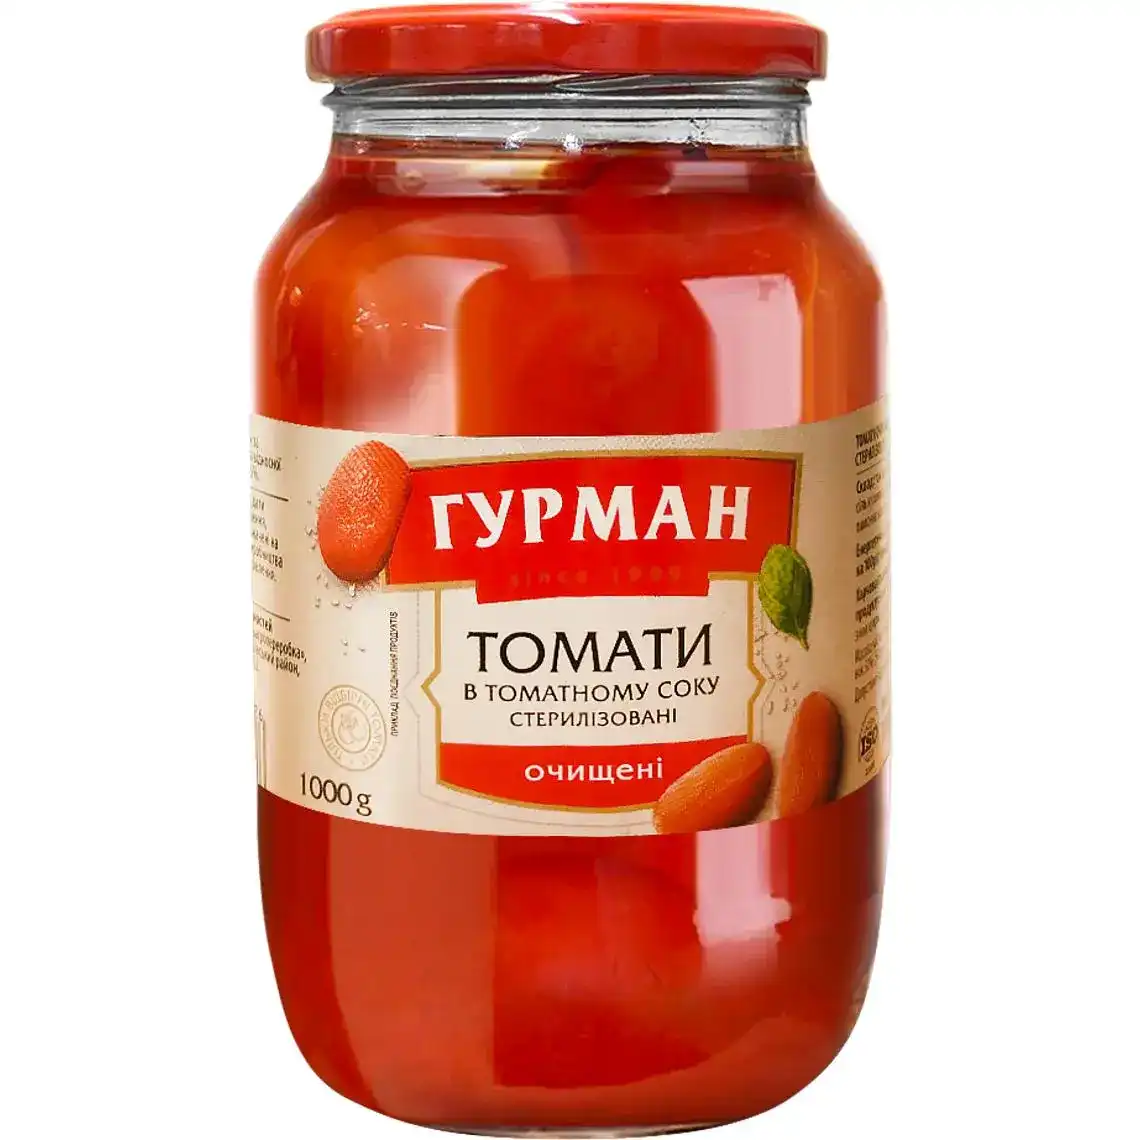 Томати Гурман очищені в томатному соку 1000 г